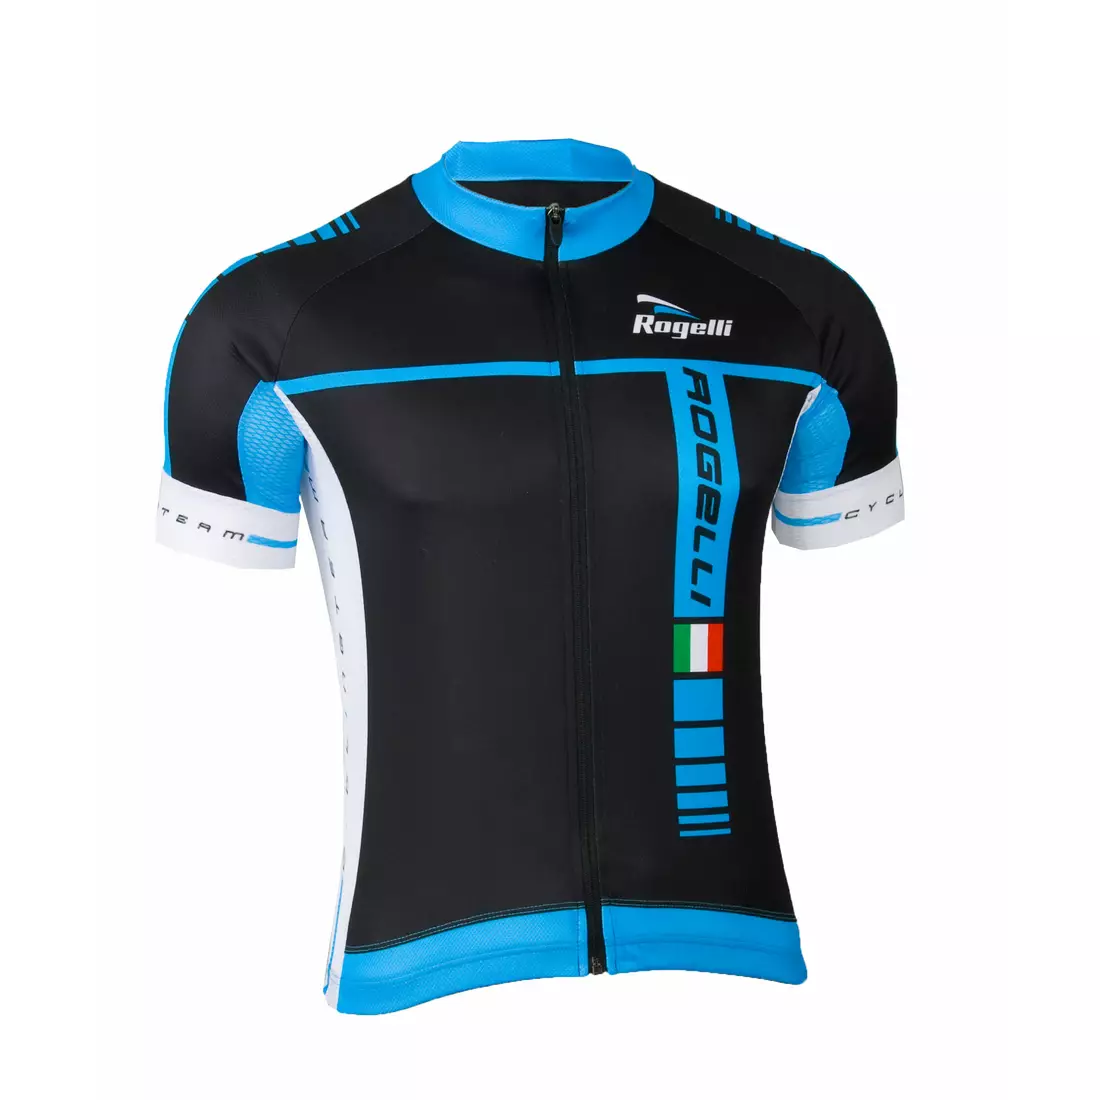 Pánsky cyklistický dres ROGELLI UMBRIA, 001.229, čierno-modrý